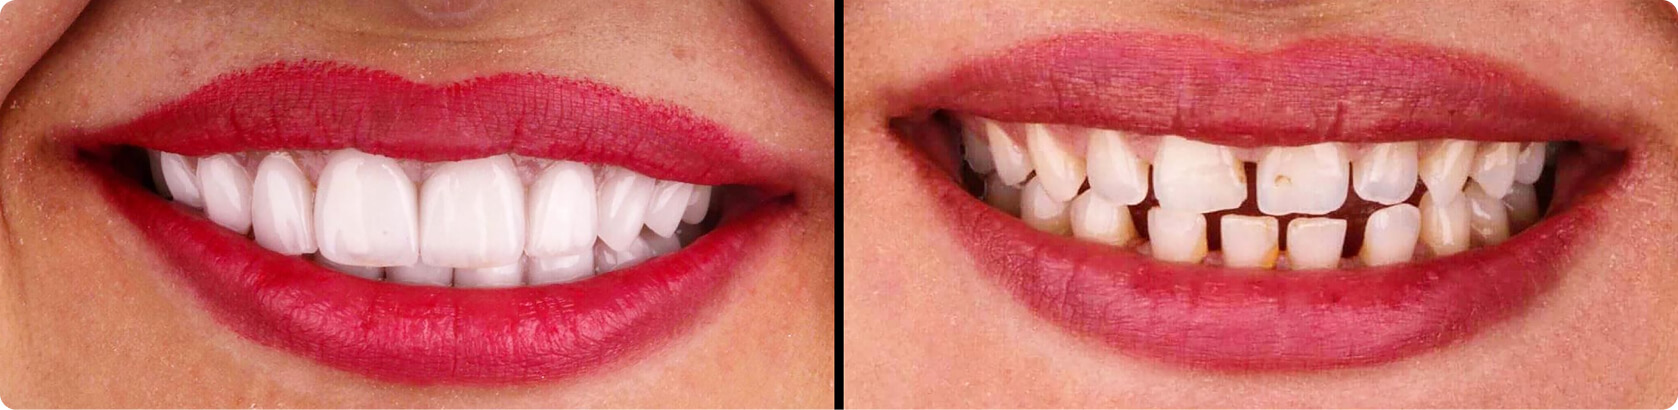 Zahnlücke (Diastema) - Wie lässt sich ein Diastema zwischen den Schneidezähnen schließen?